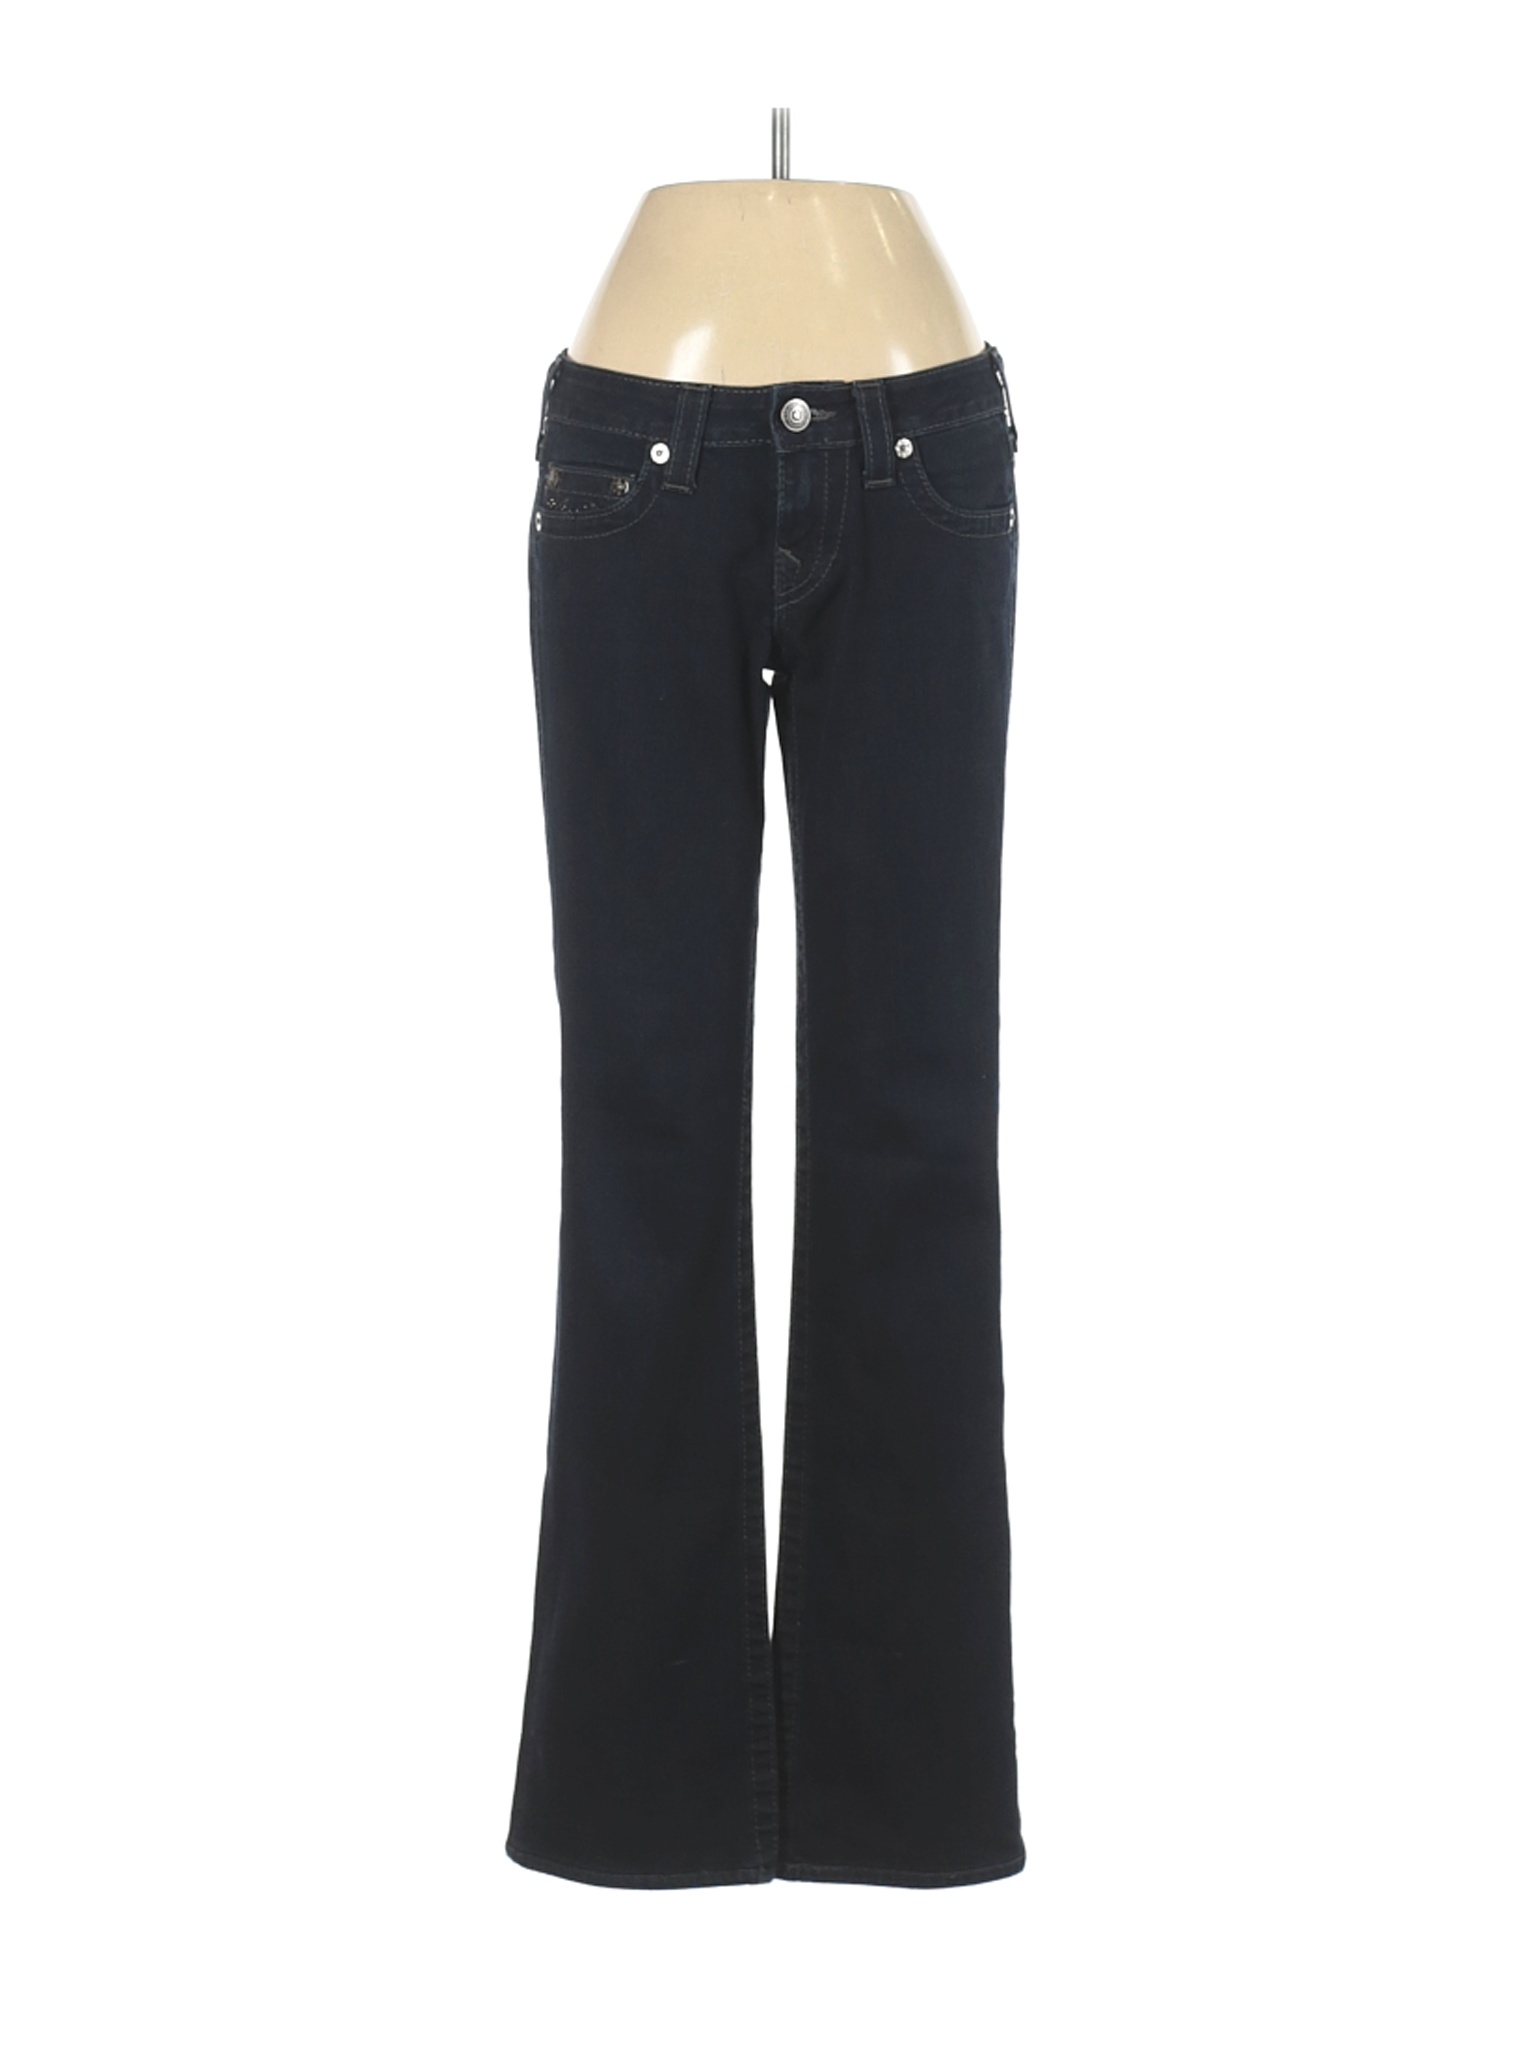 True Religion Women Black Jeans 27W | eBay